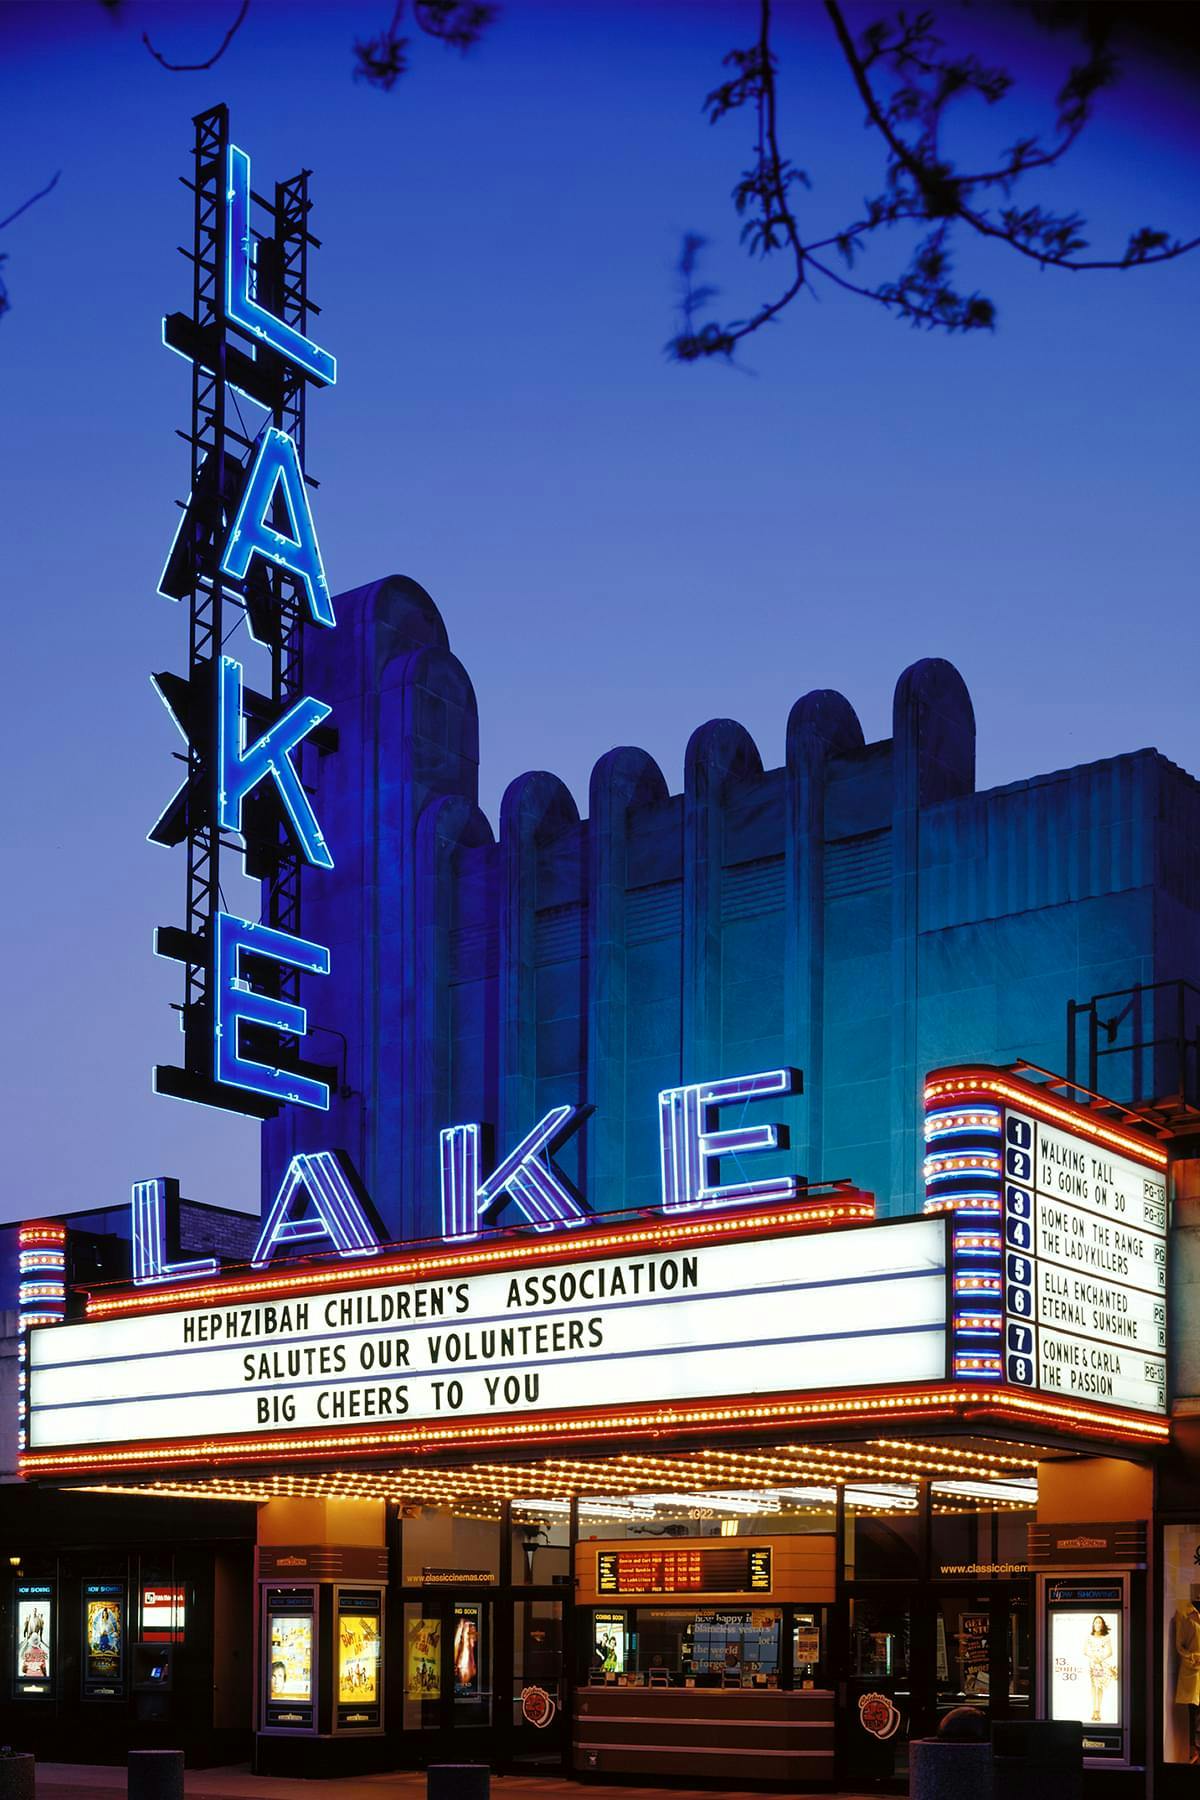 Lake Theatre